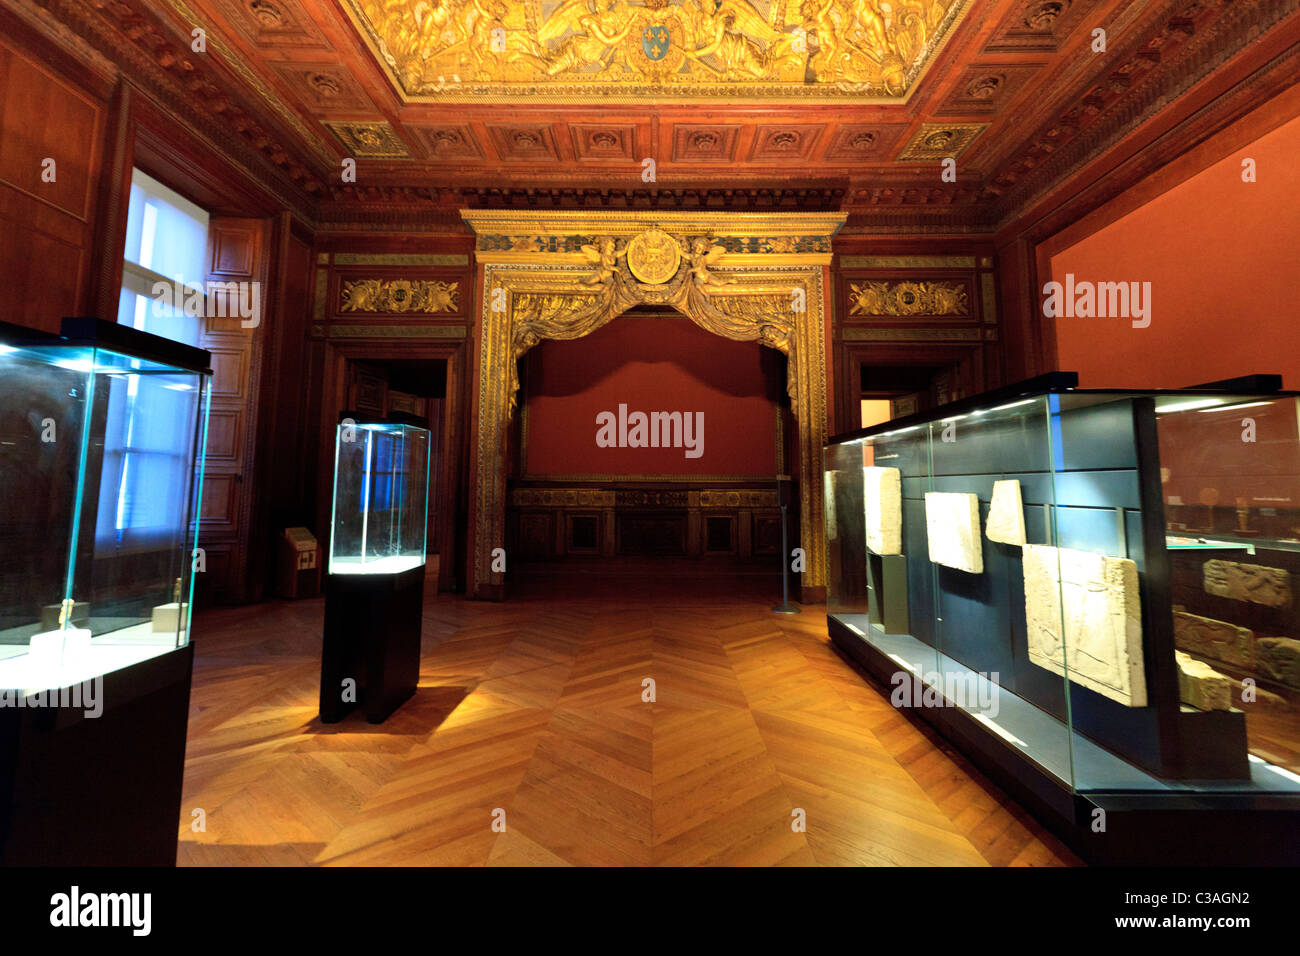 Die großartige Kulisse des ägyptischen Raumes des Louvre, Paris Stockfoto